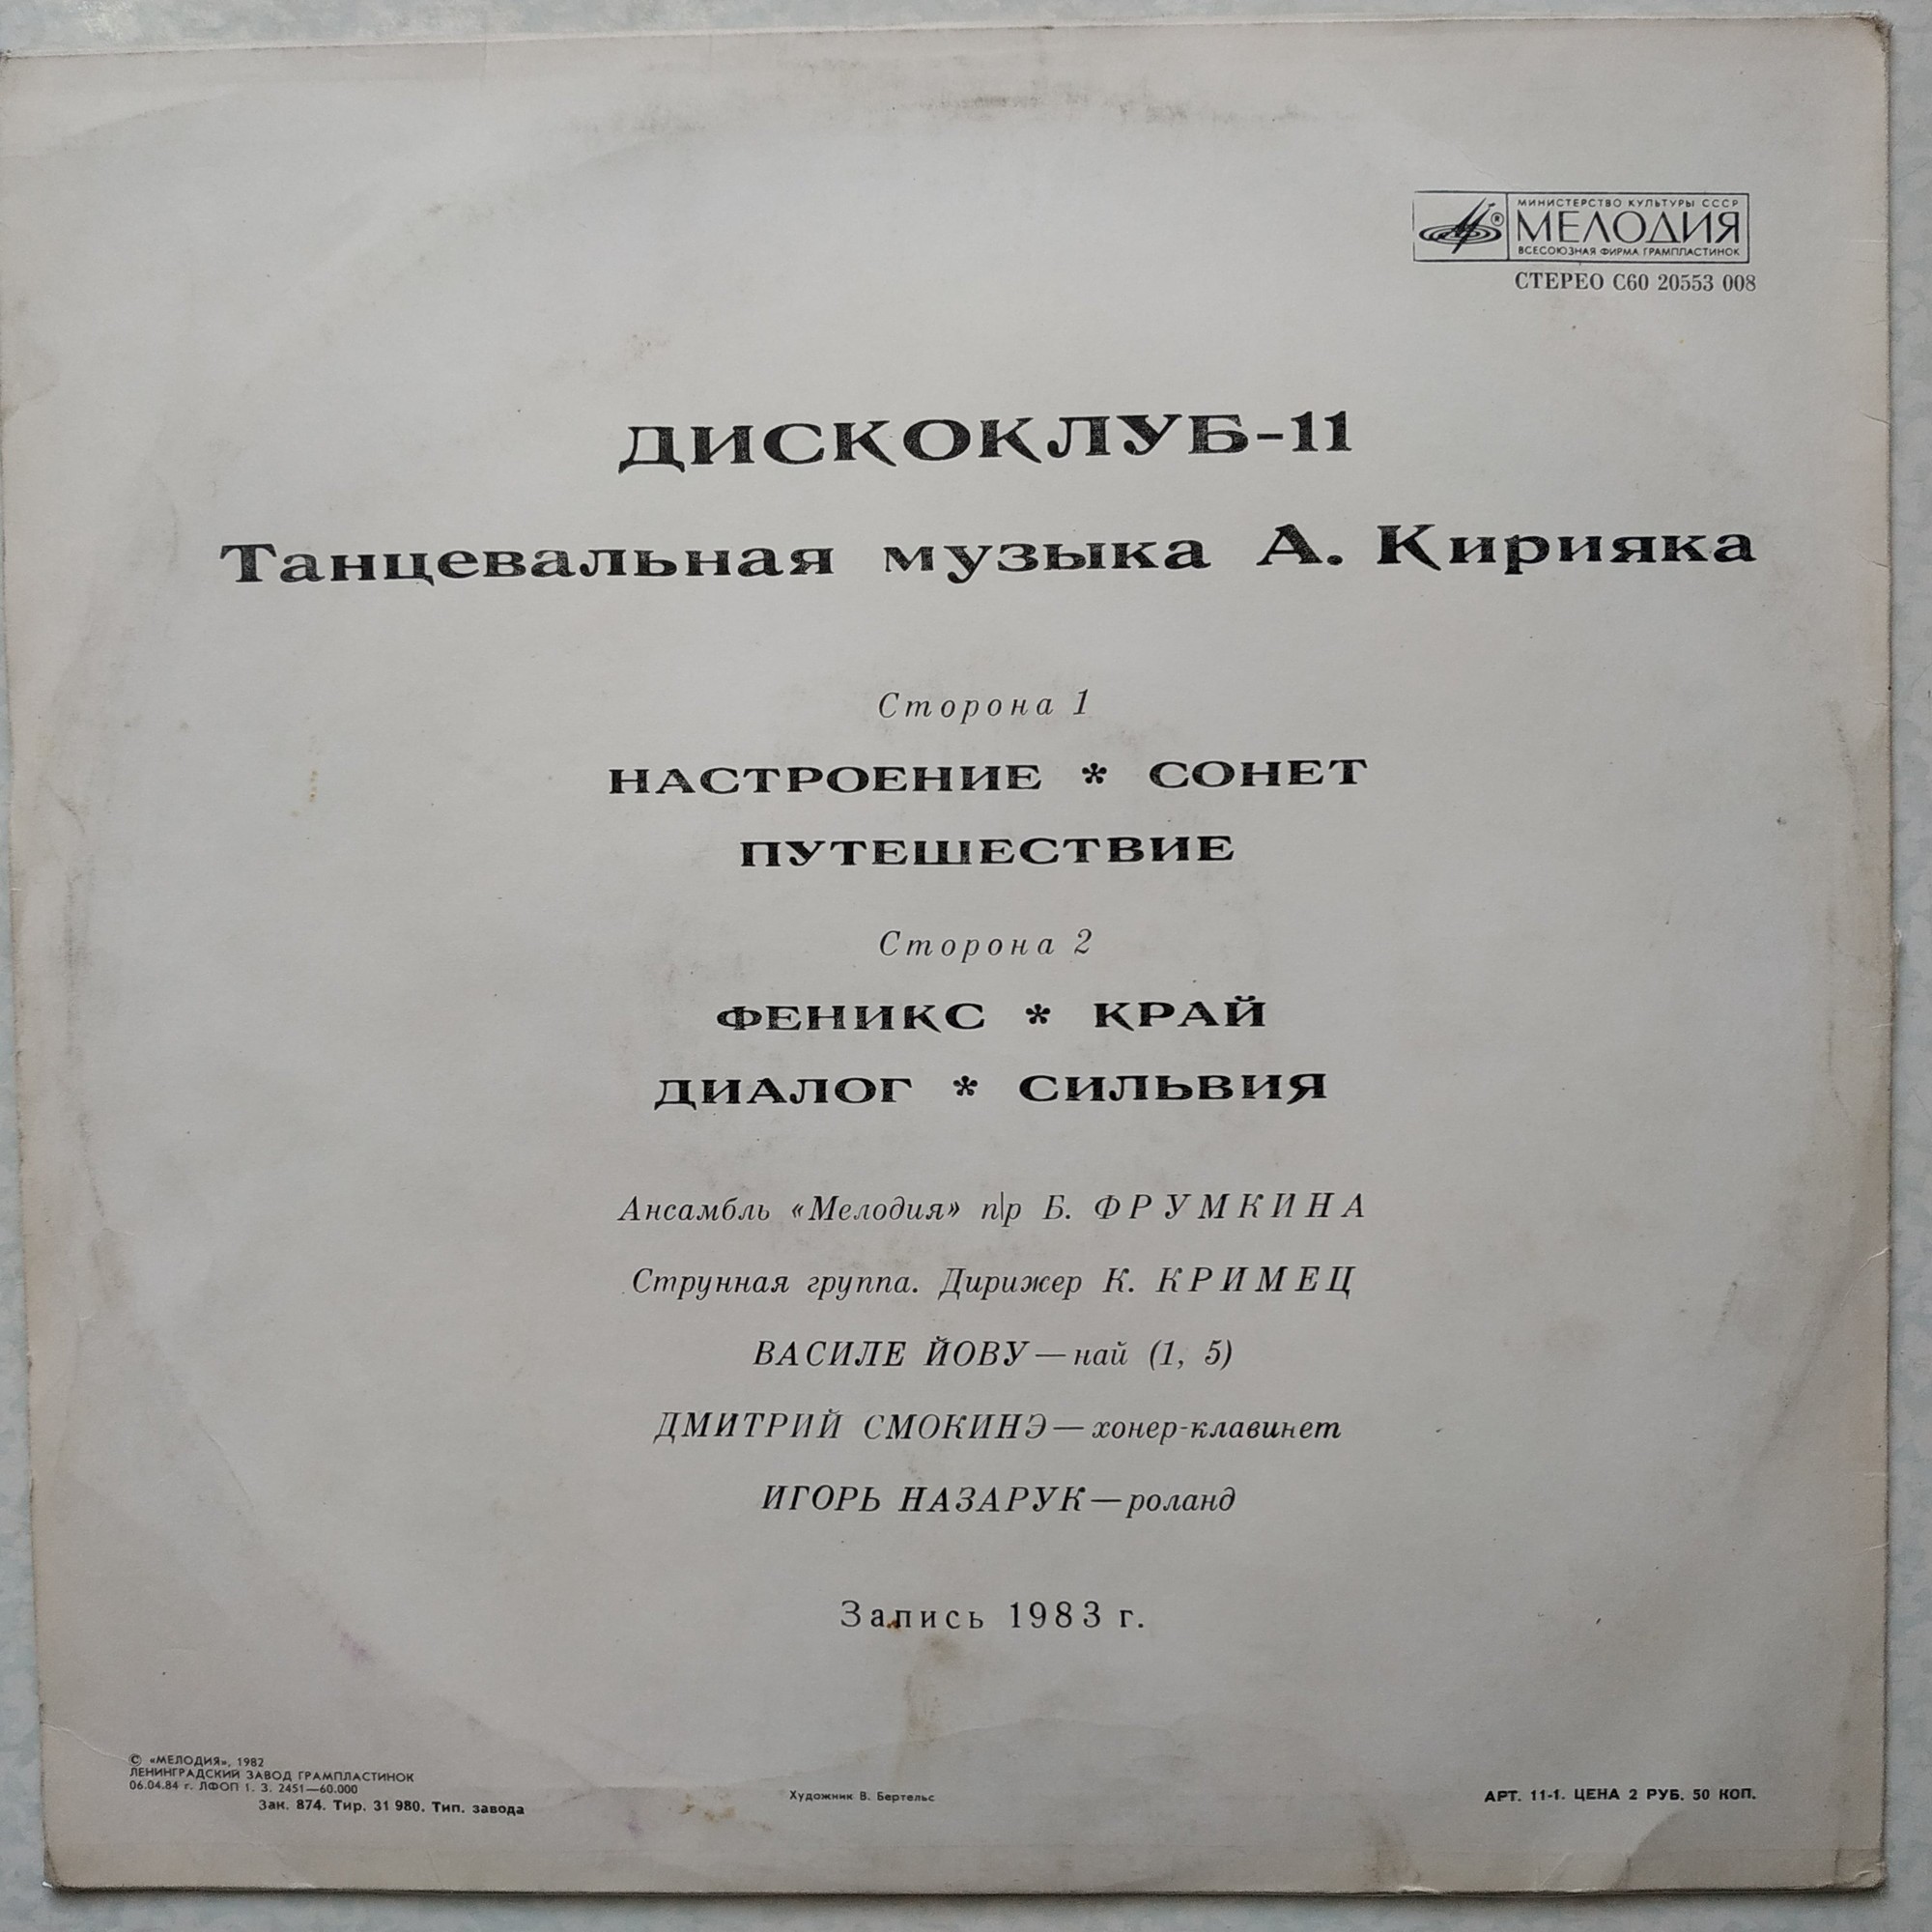 ДИСКОКЛУБ-11 - Танцевальная музыка Анатолия Кирияка. Популярные ансамбли и солисты